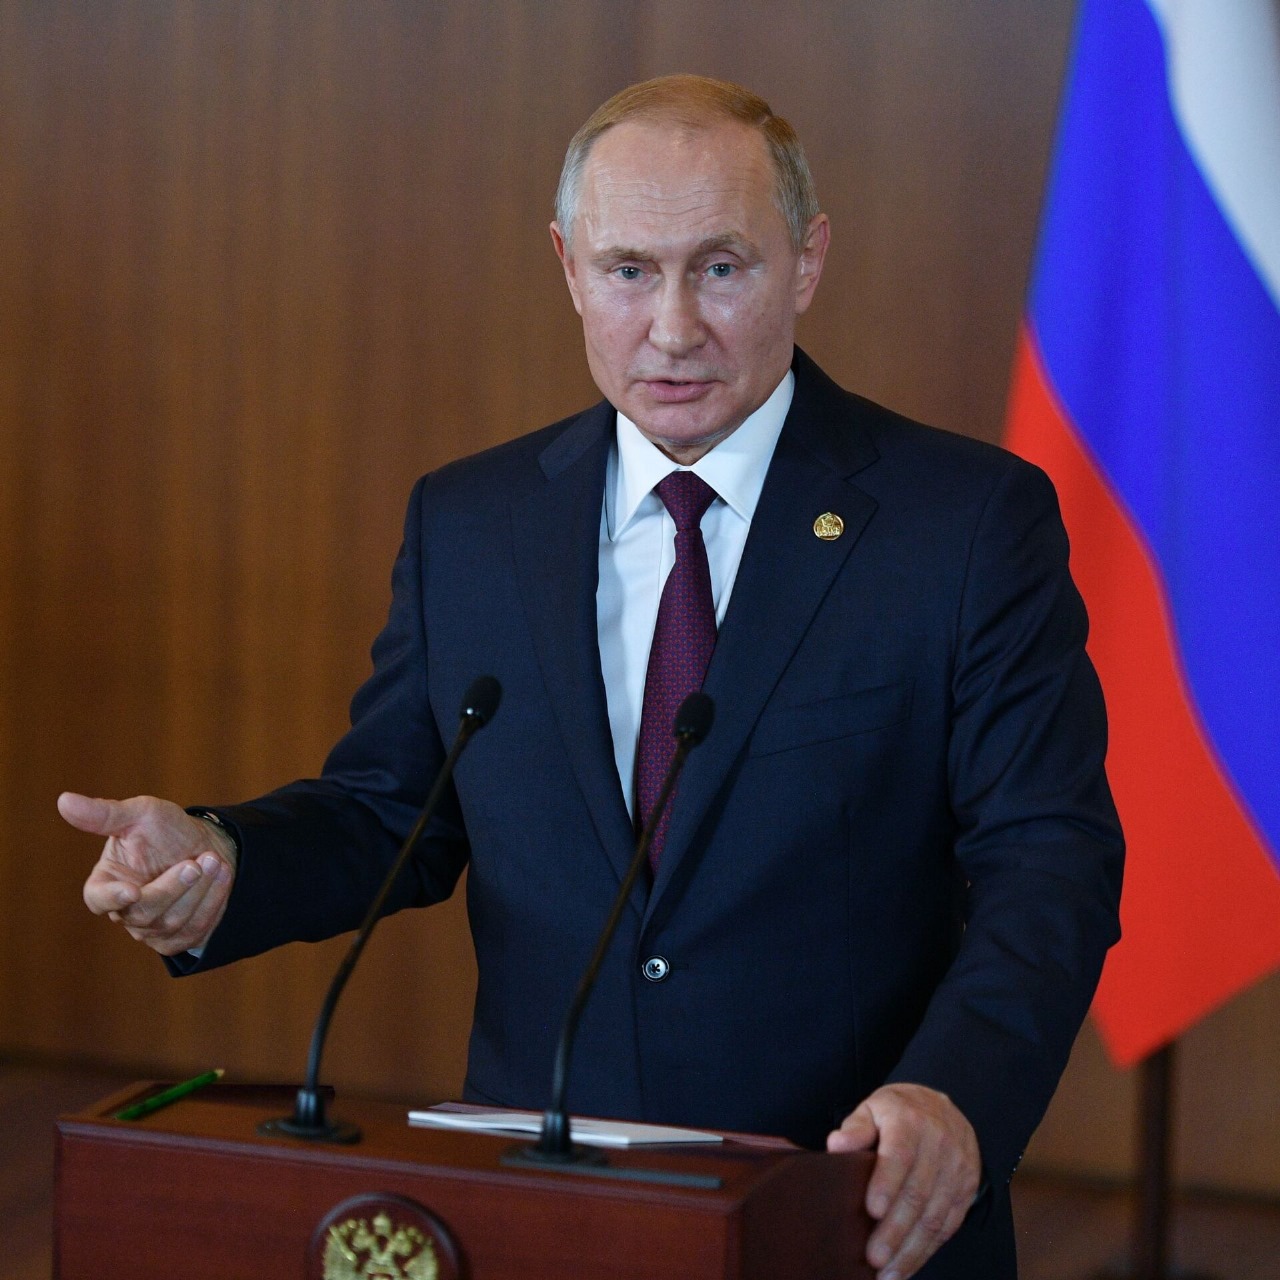 بوتين: قوة روسيا تتعاظم على جميع الأصعدة بما في ذلك اقتصادها